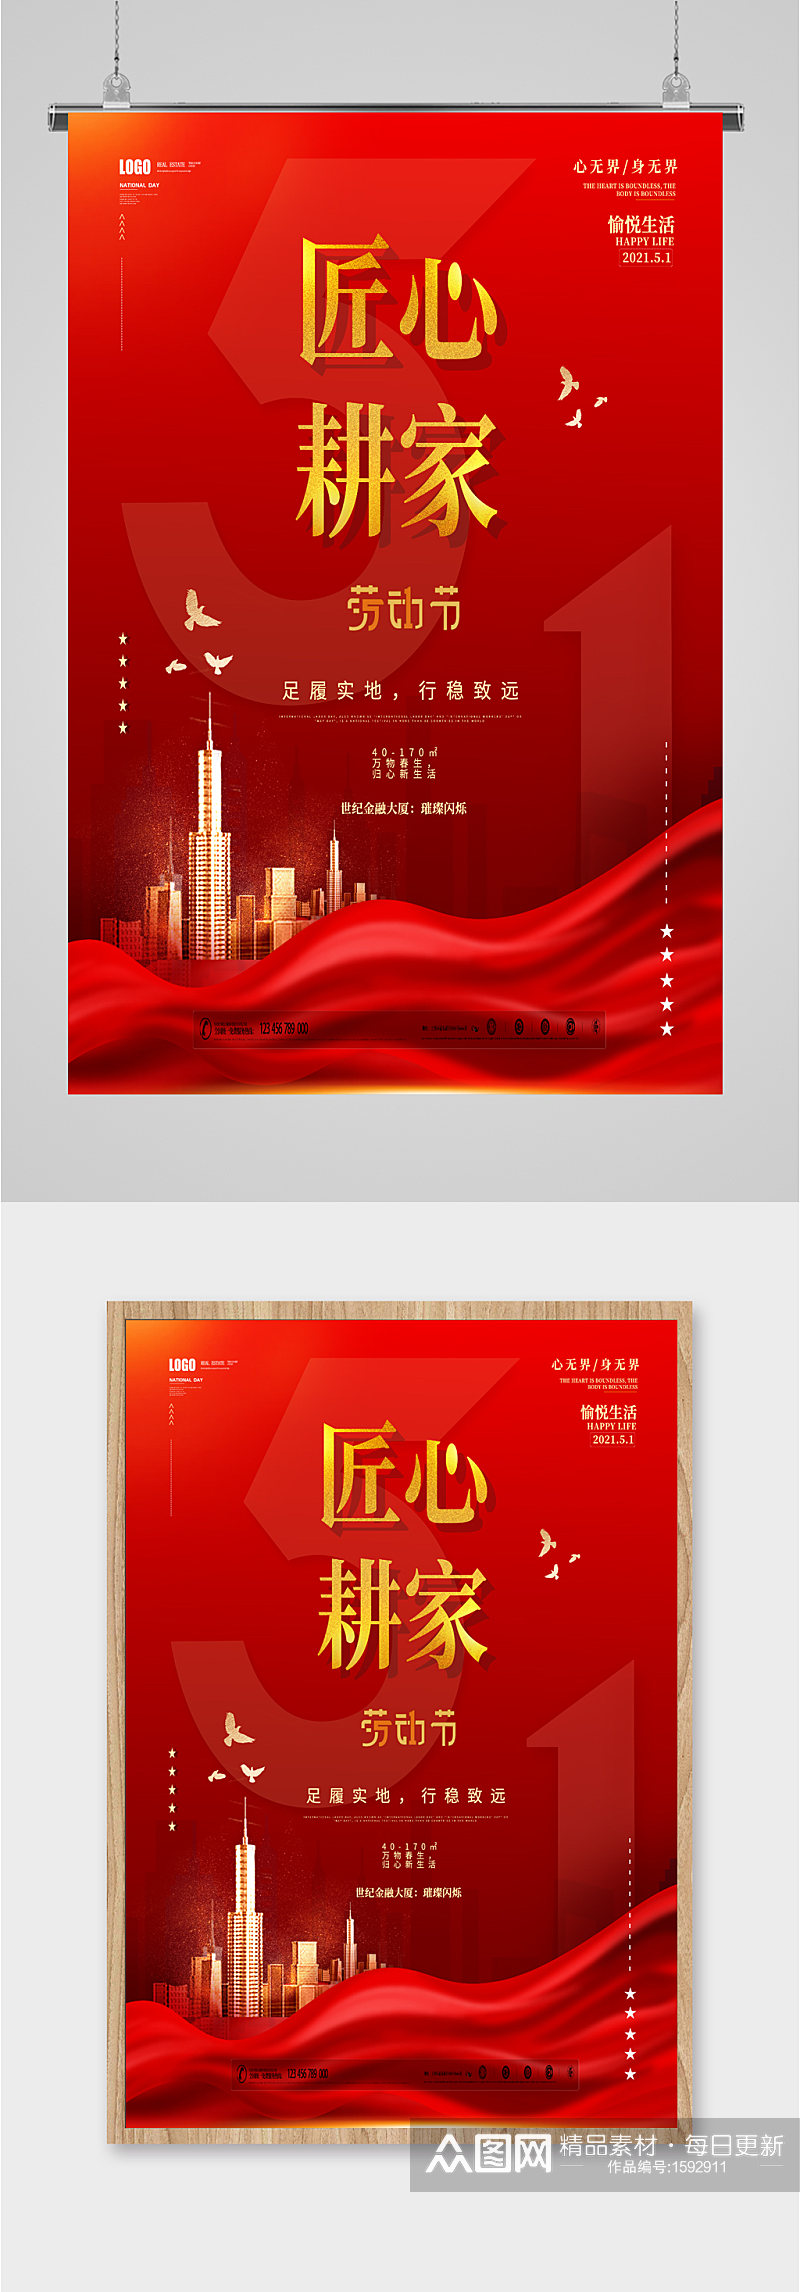 中国风大气红色地产宣传海报素材